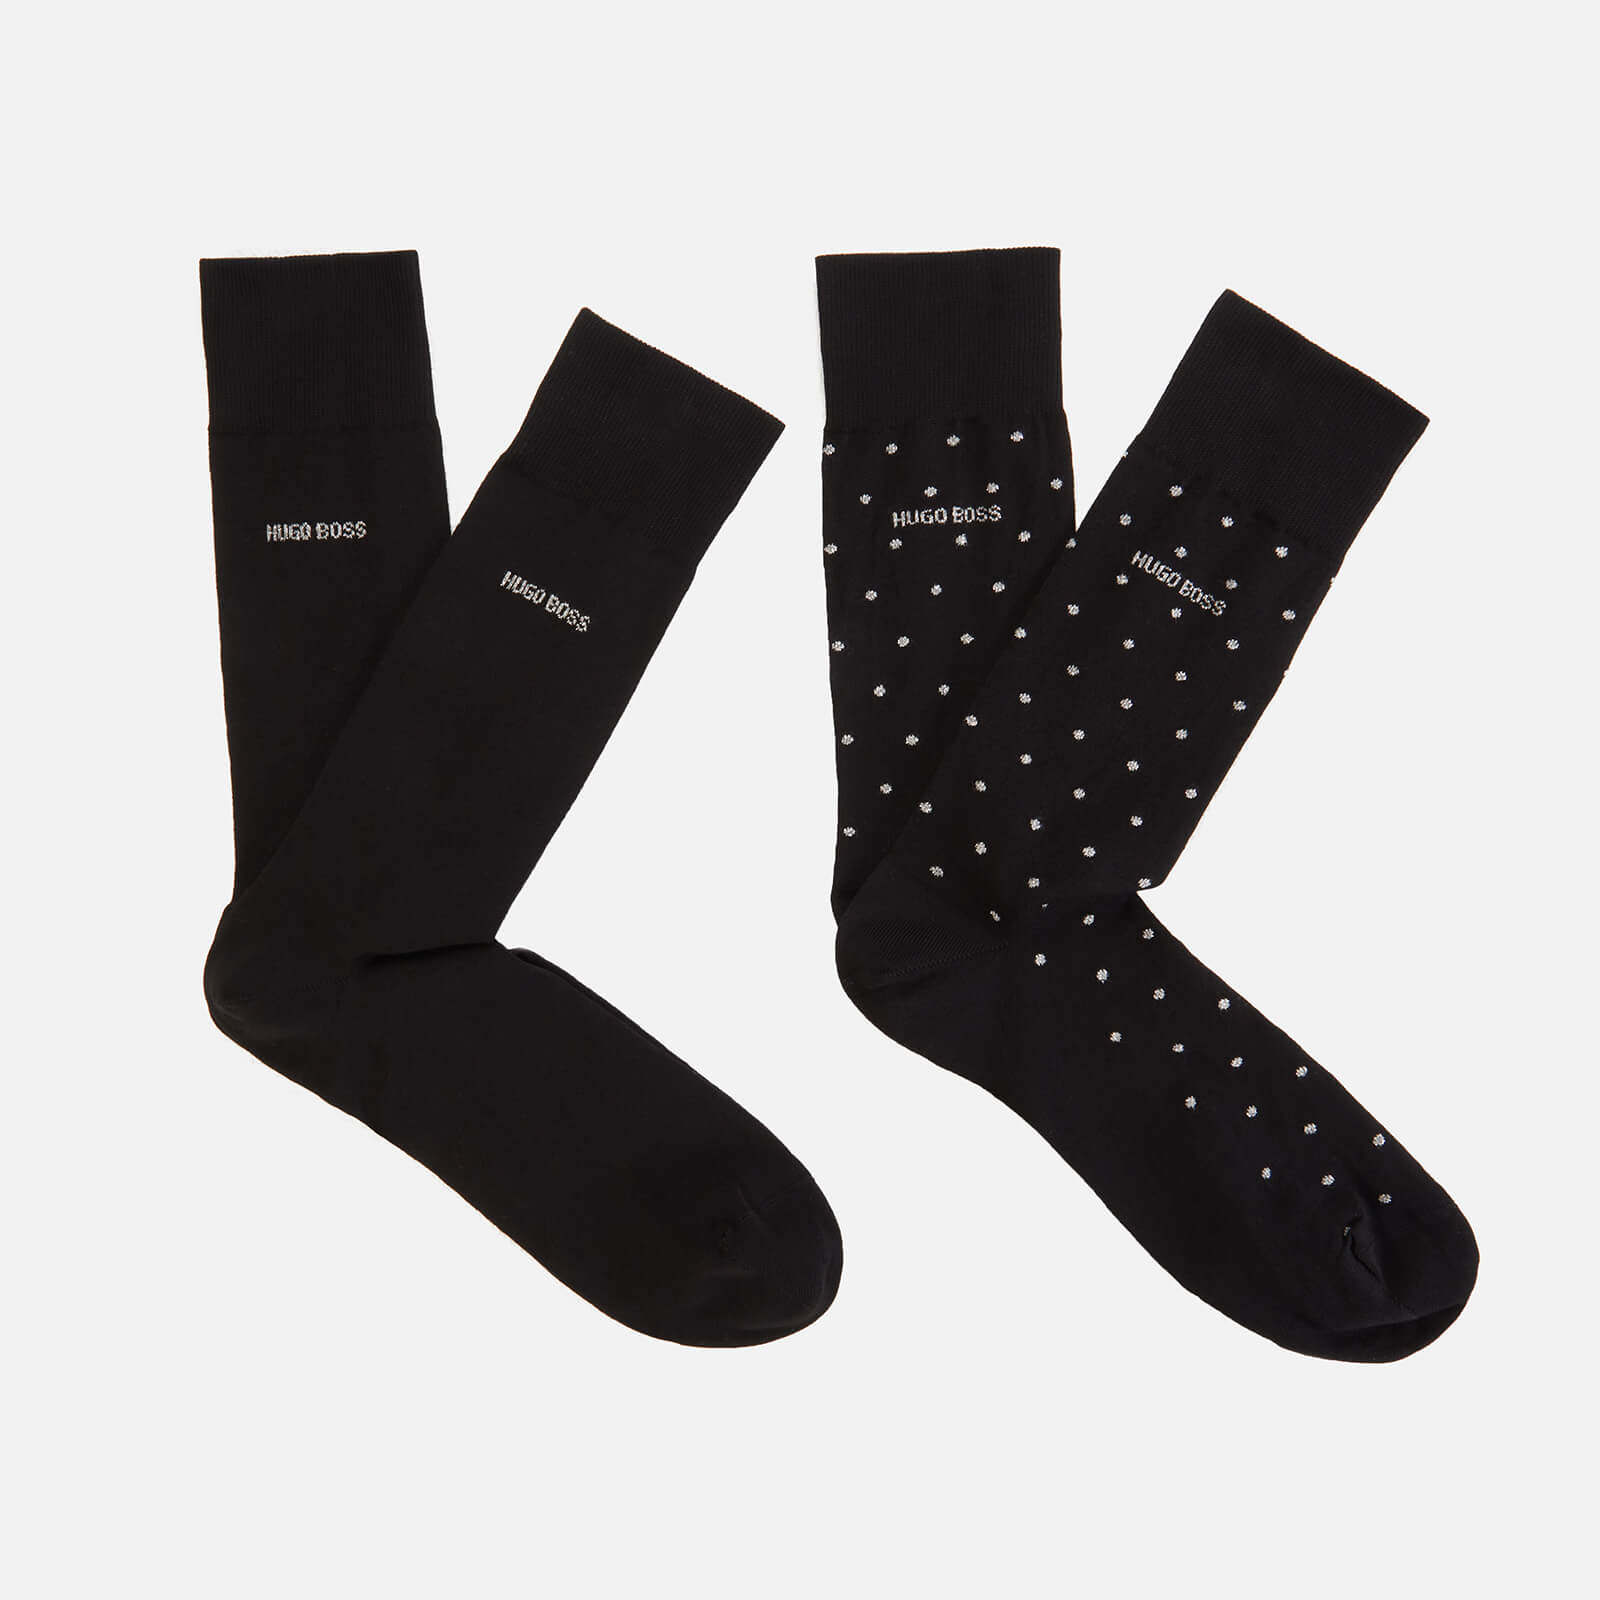 BOSS Bodywear Men's 2-Pack Gift Set Socks - Black - 40-46